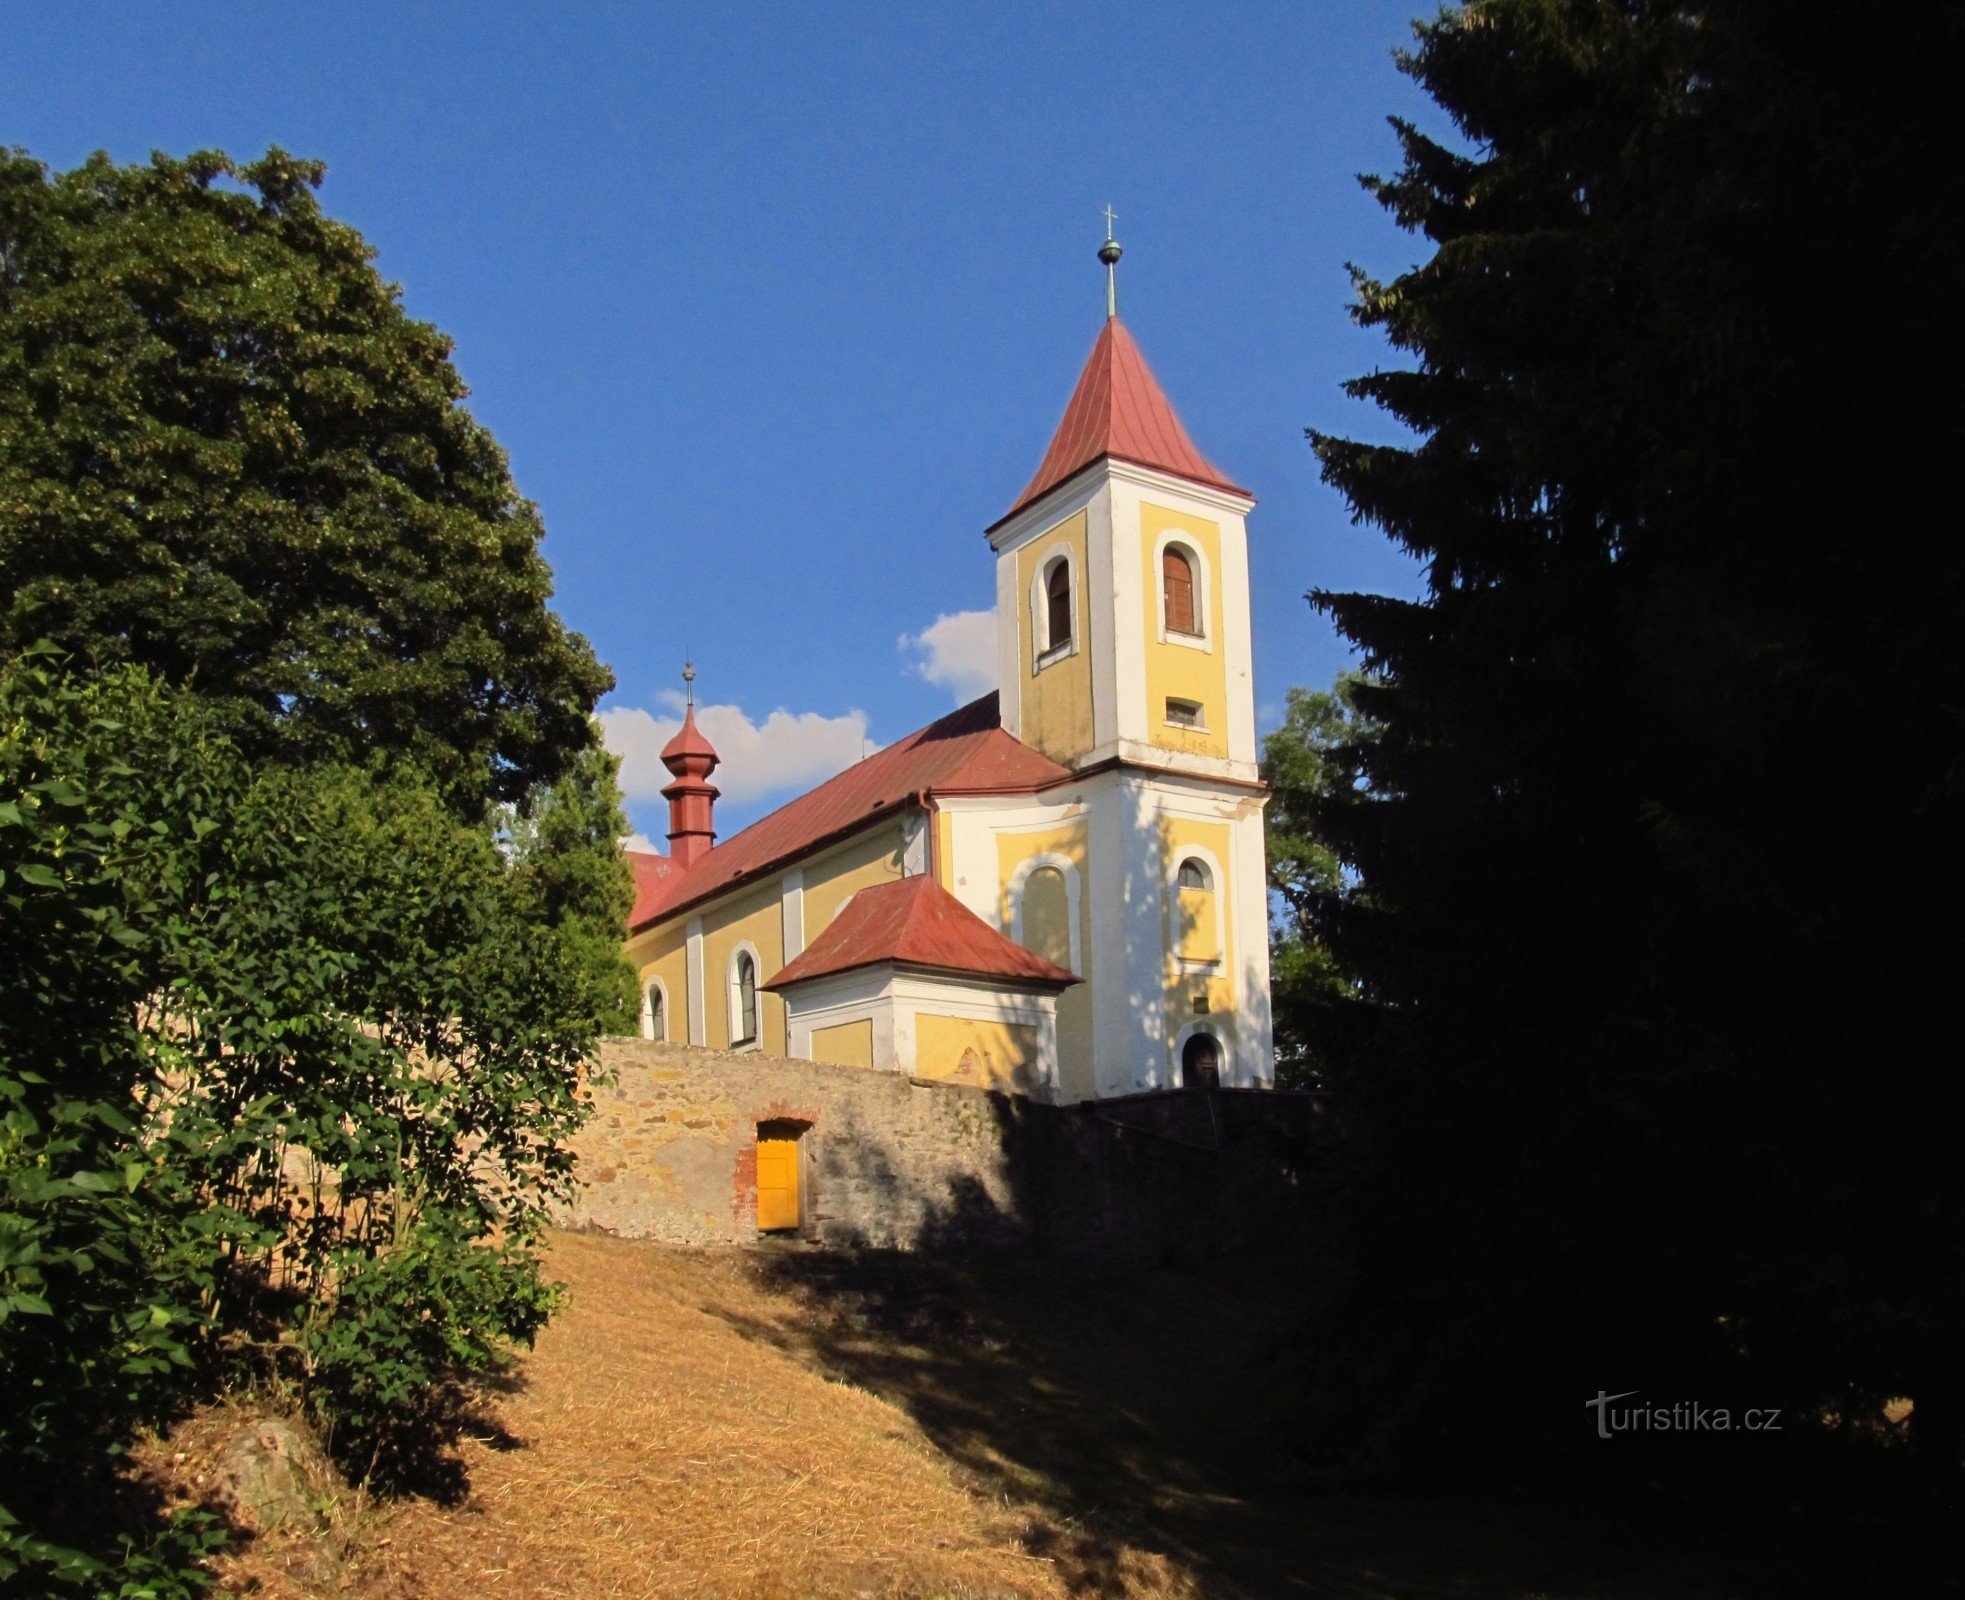 01 Biserica din Sopot